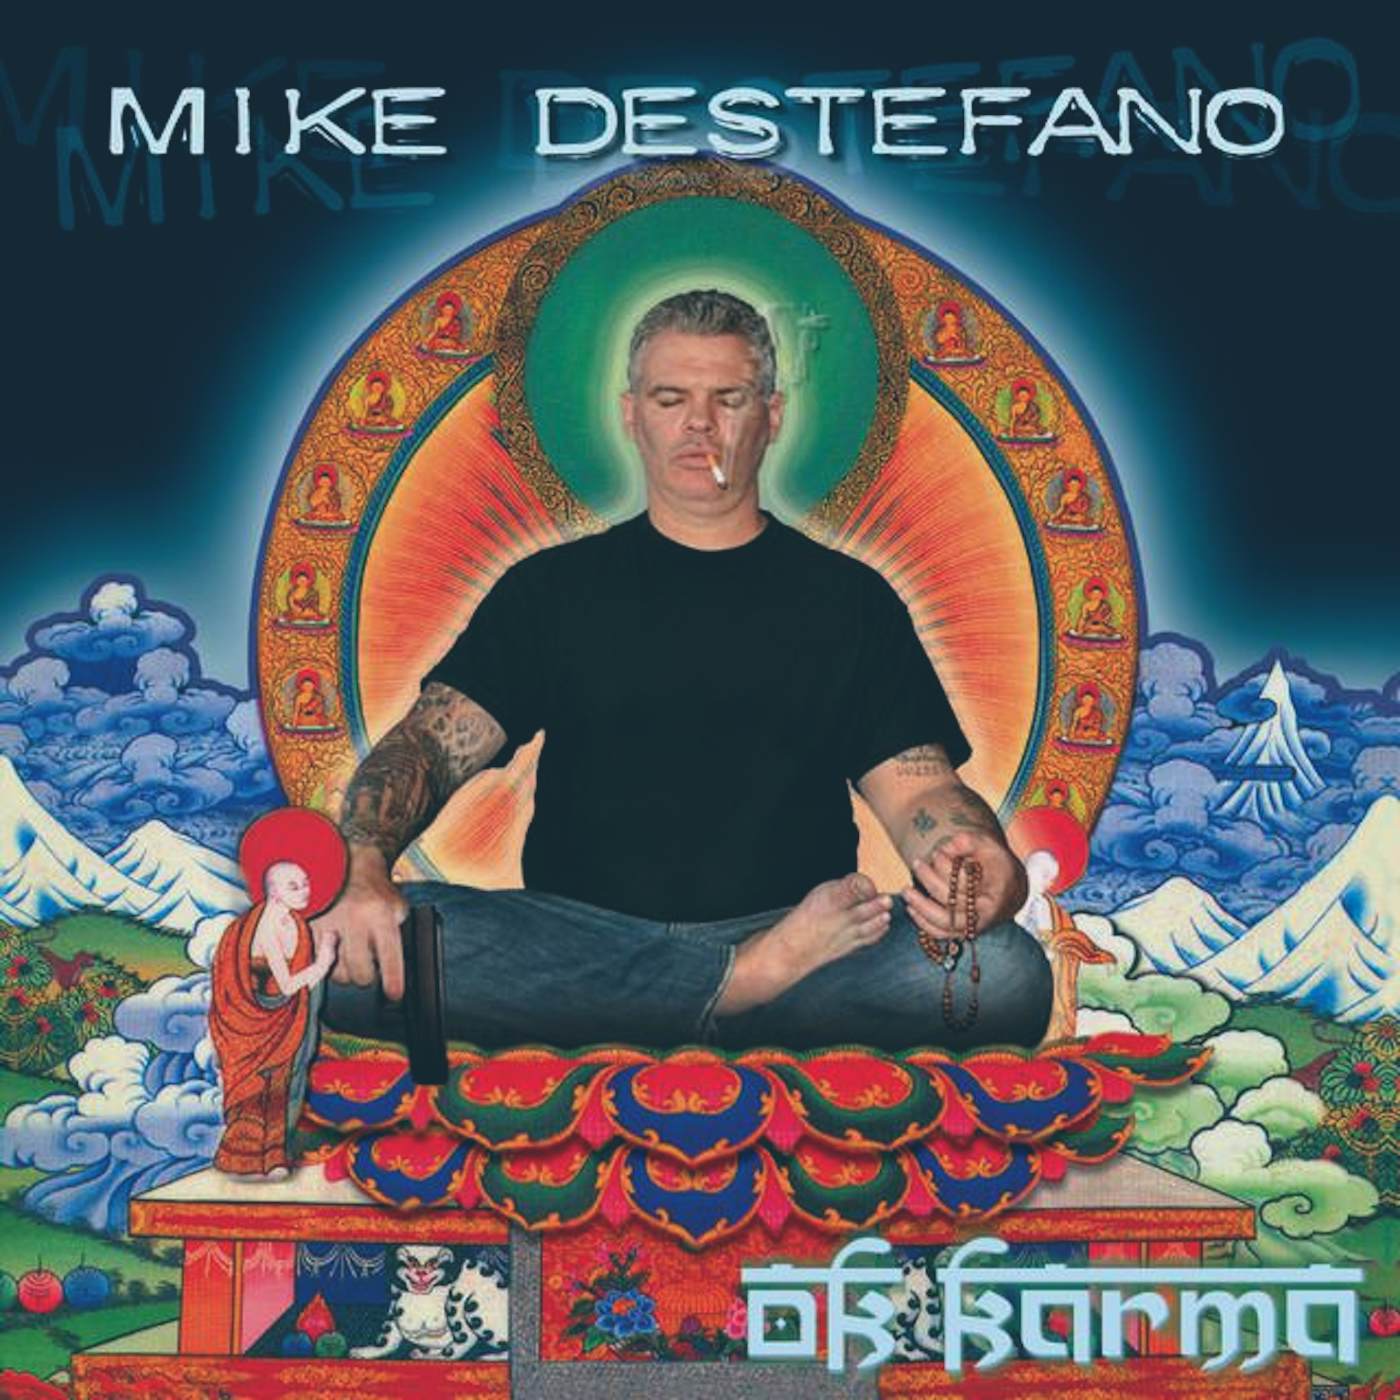 Mike DeStefano